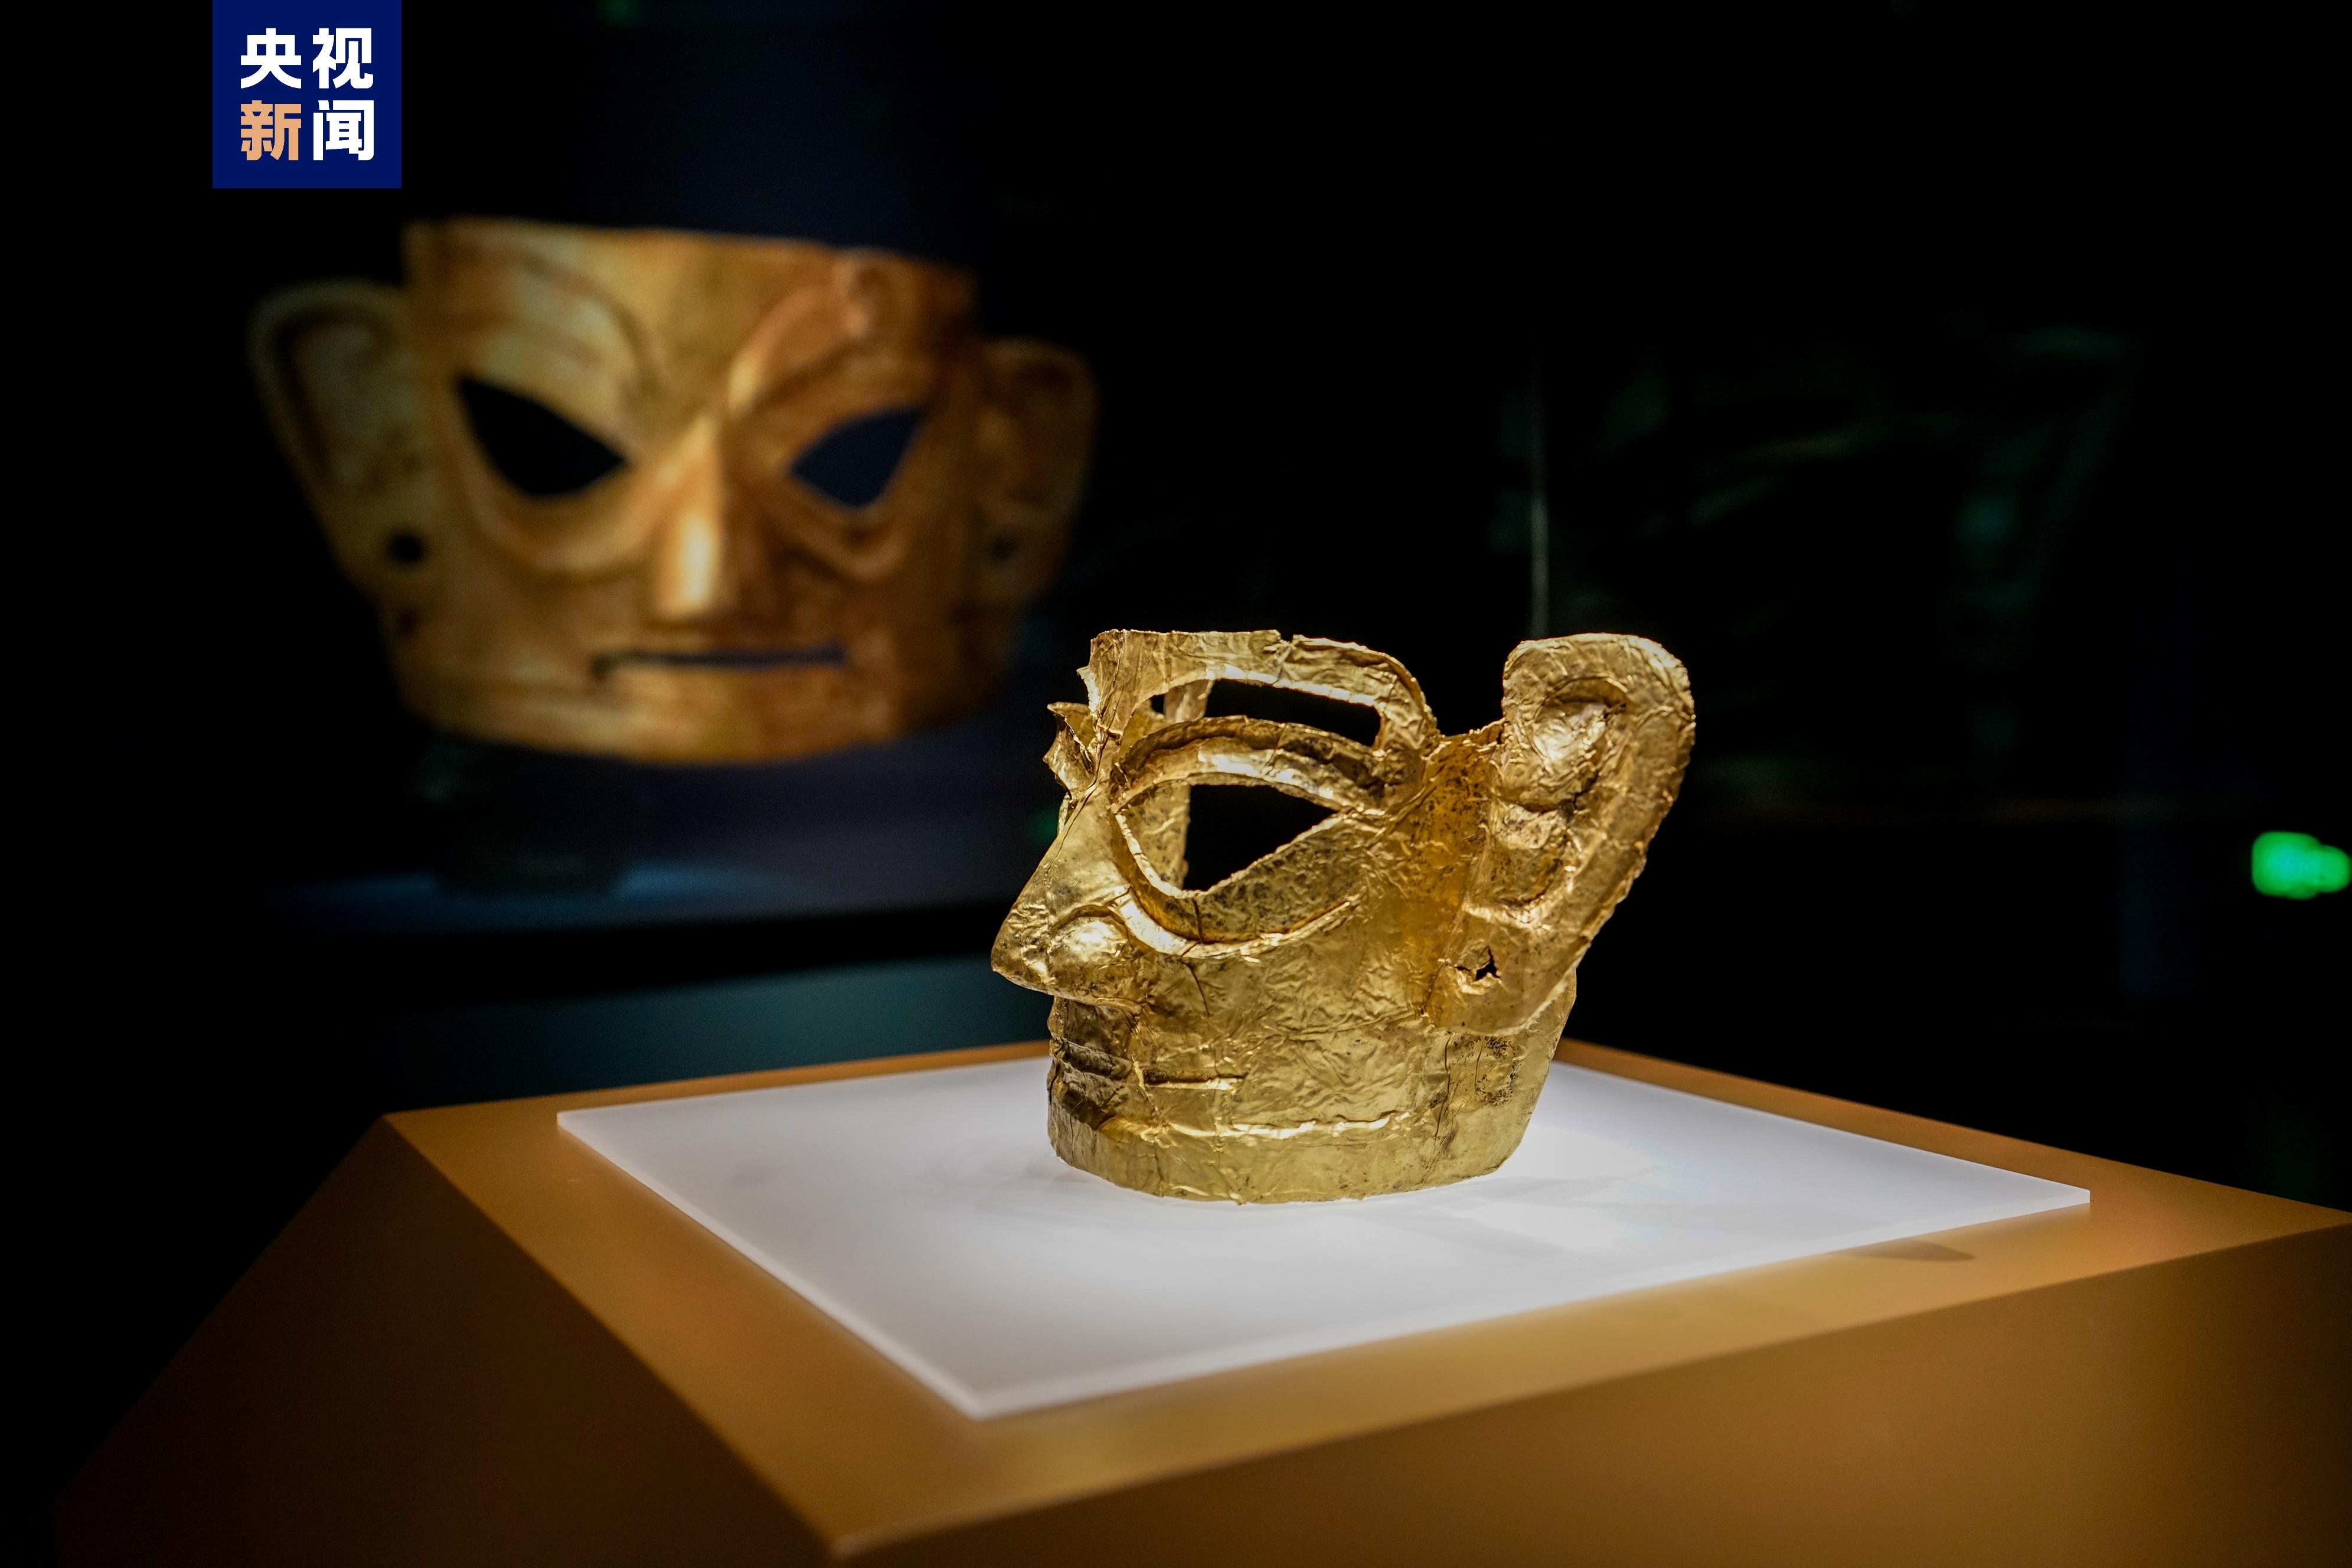 展出363件/套古蜀文物 在上海博物馆遇见三星堆·金山古蜀文明